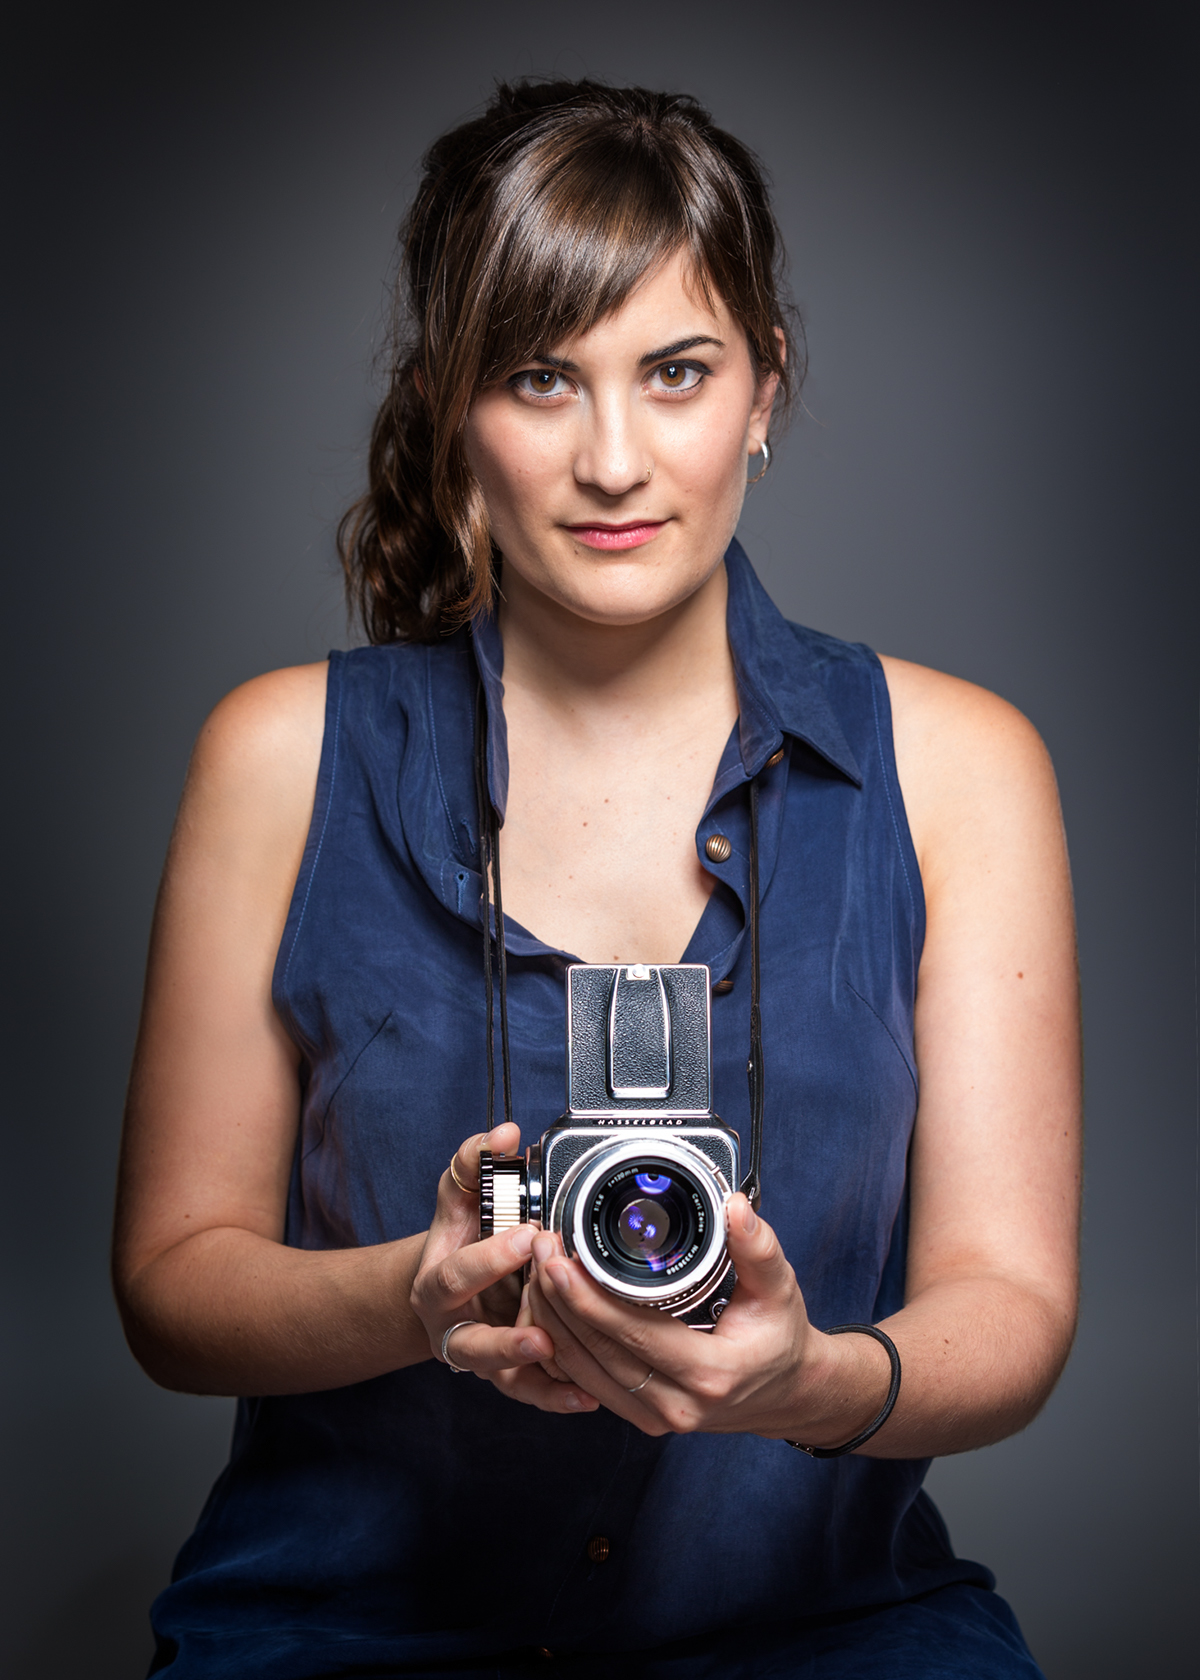 marca personal New York Web Artista Multidisciplinar retrato portrait selfimage lanzamiento de marca